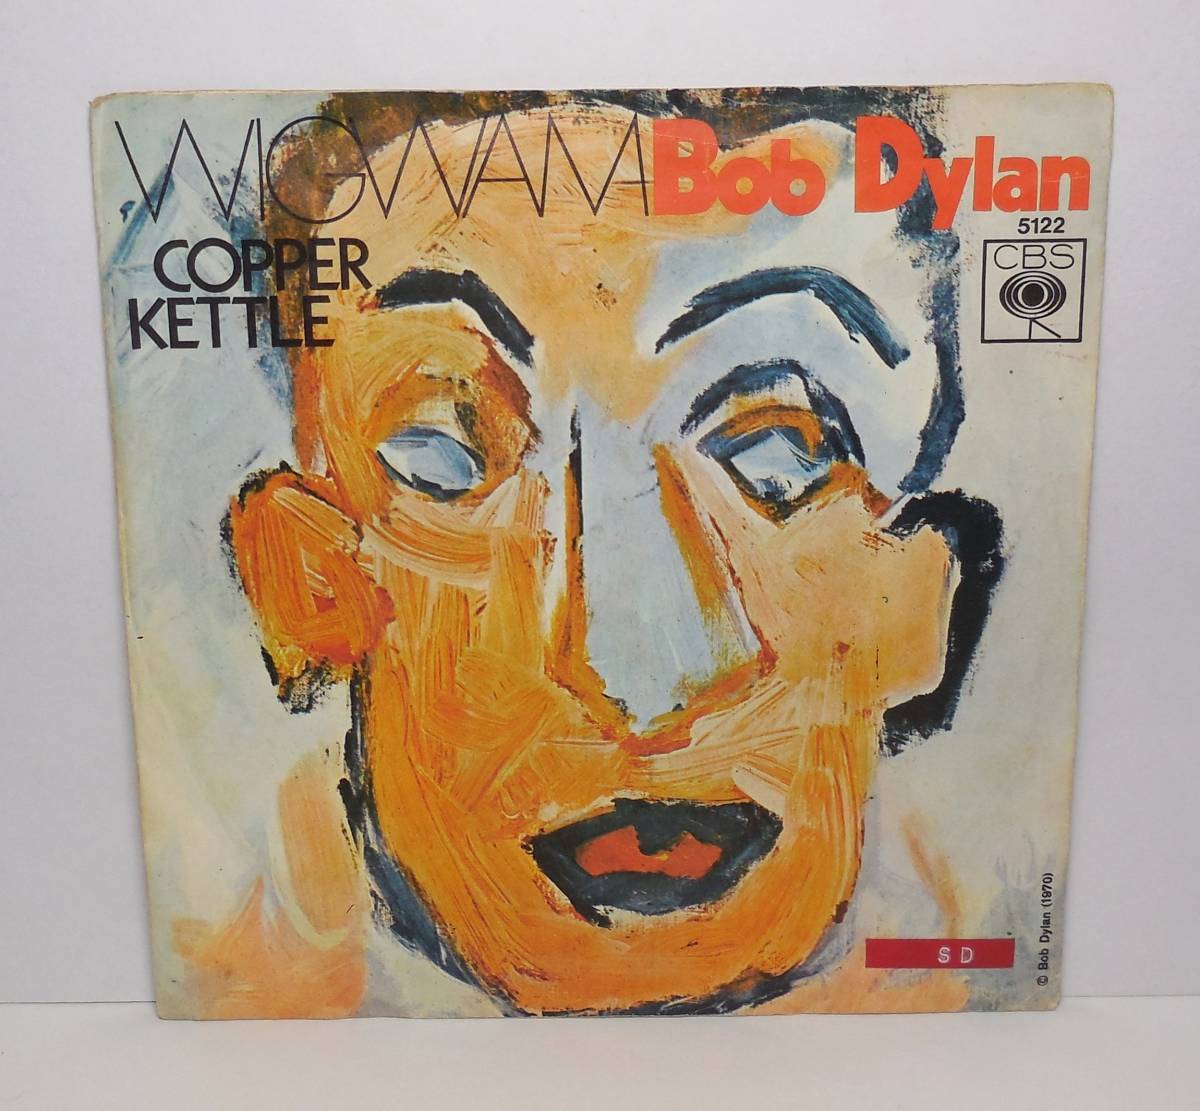 ボブ・ディラン/BOB DYLAN「WIGWAN/COPPER KETTLE」7インチ レコード オランダ/Holland盤の画像1